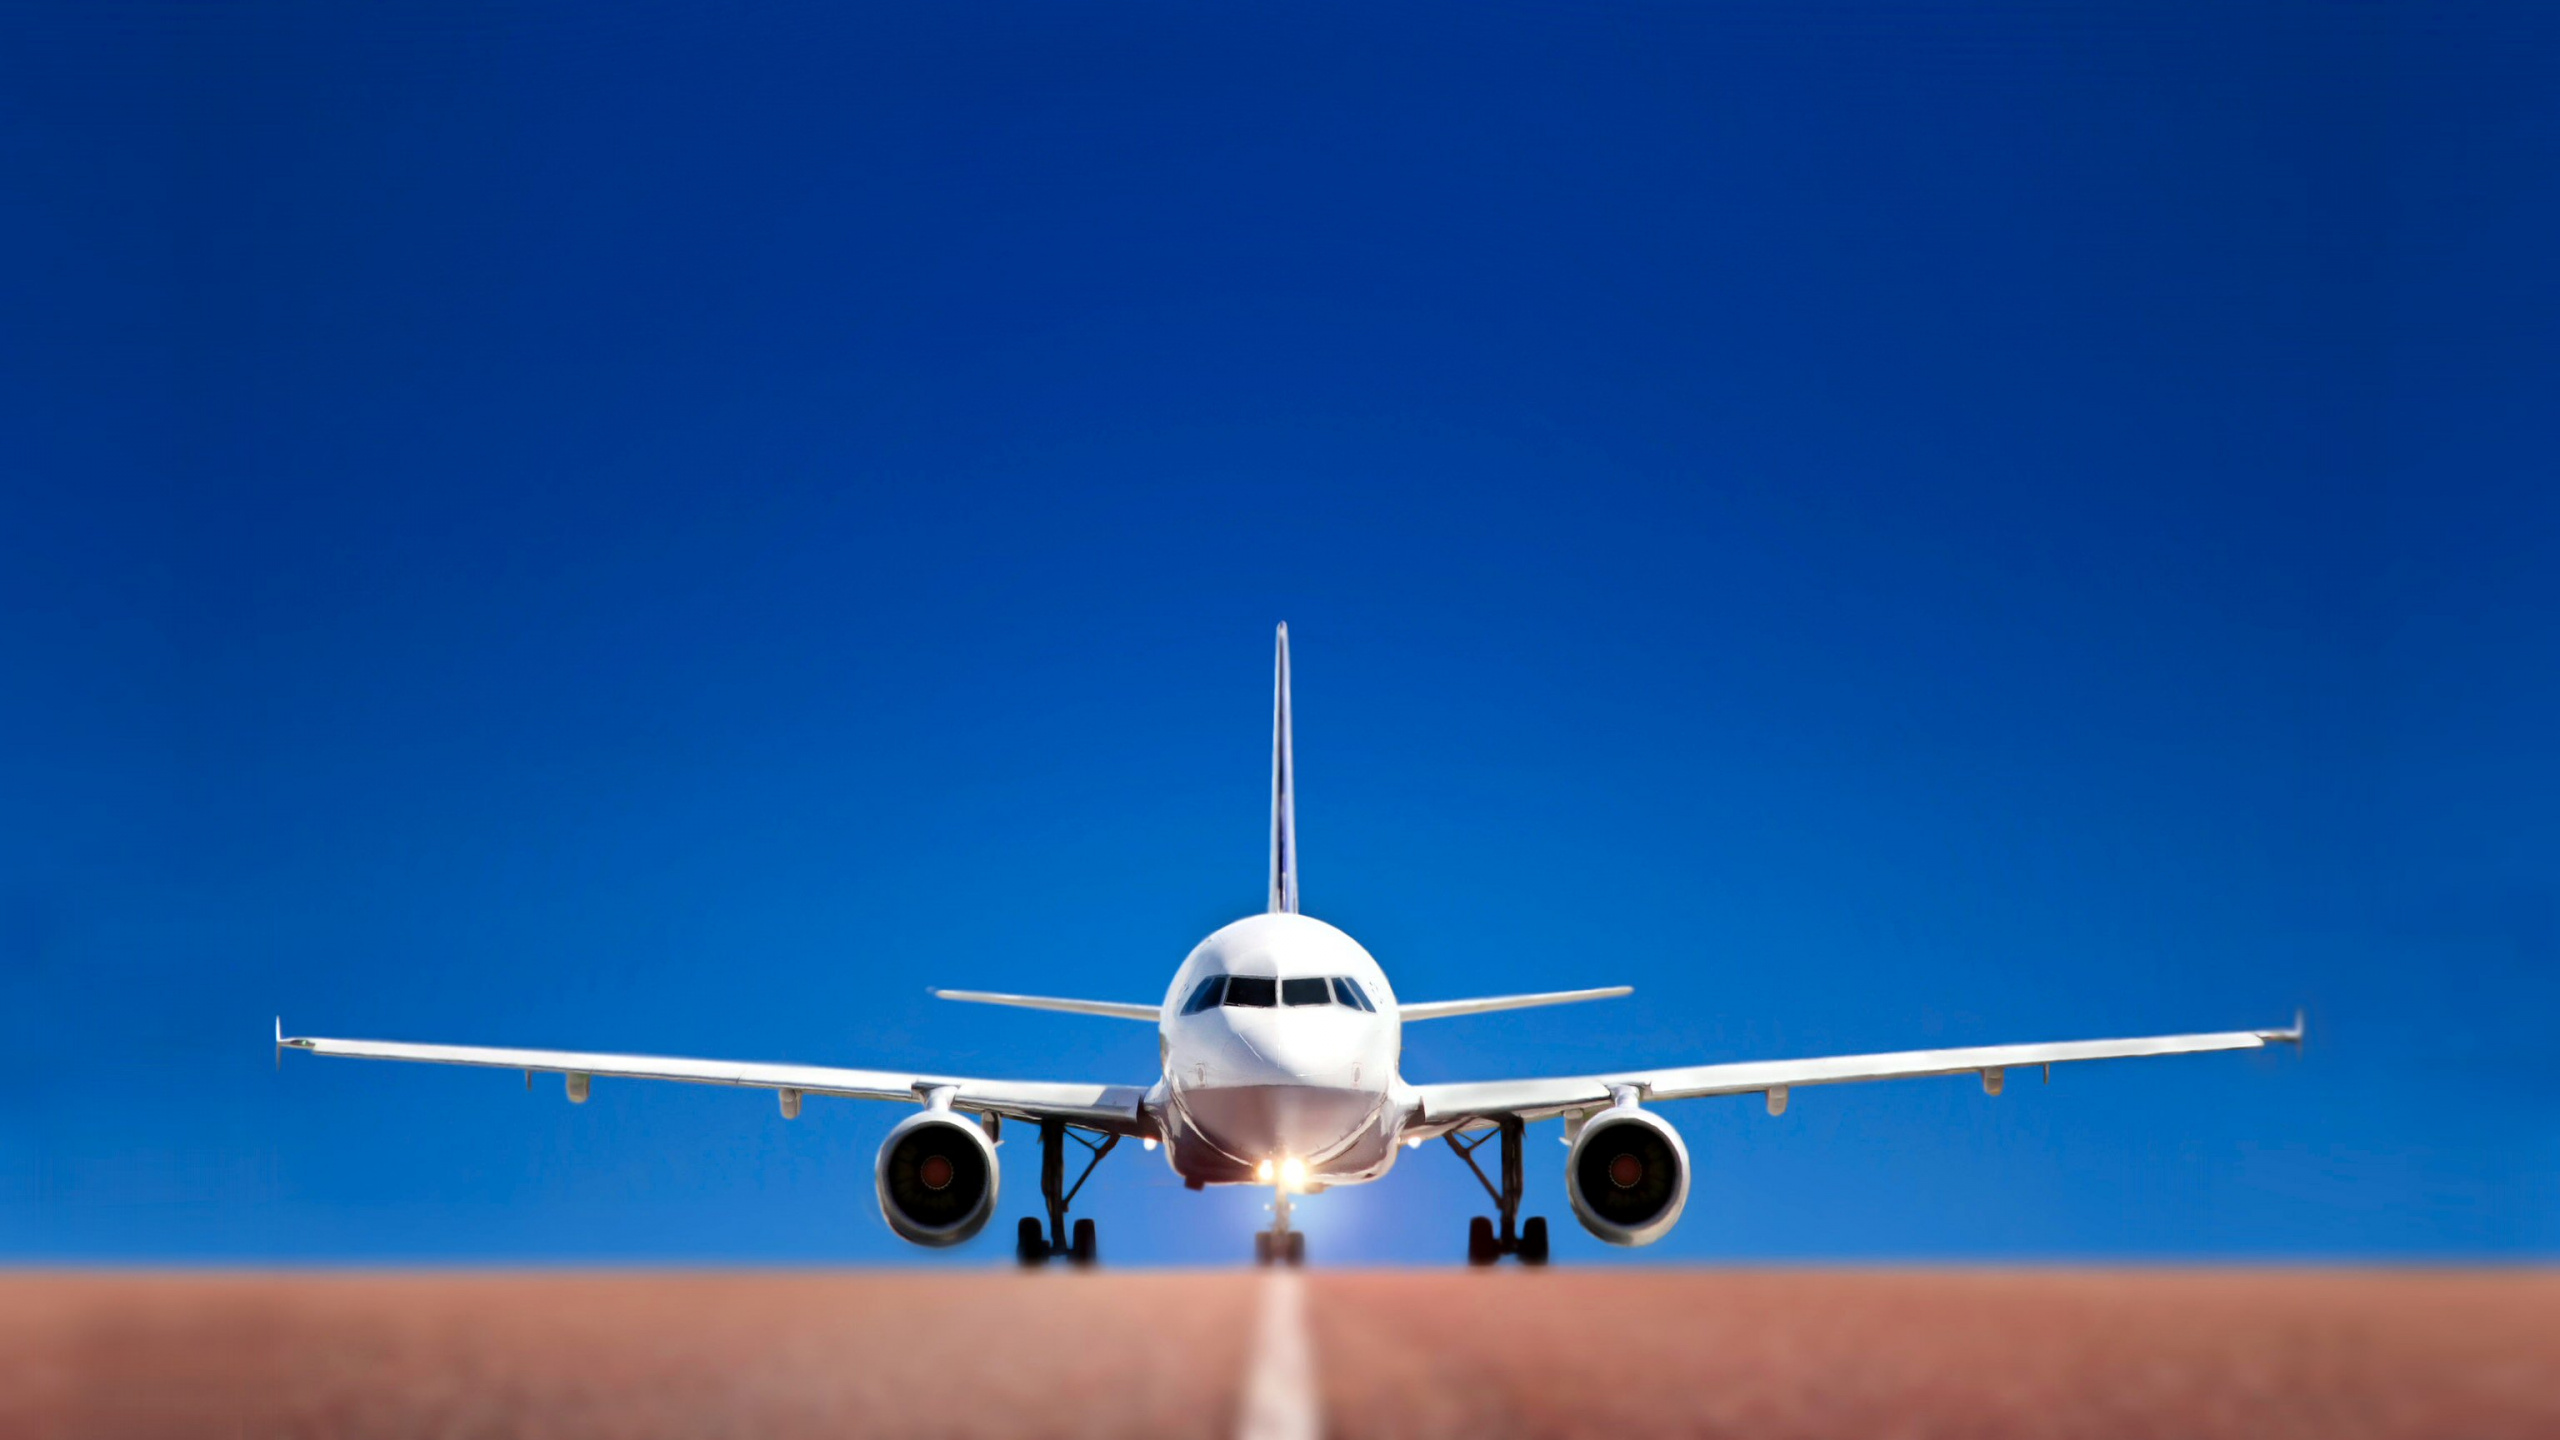 航空公司, 空中旅行, 航空, 客机, 航空航天工程 壁纸 2560x1440 允许